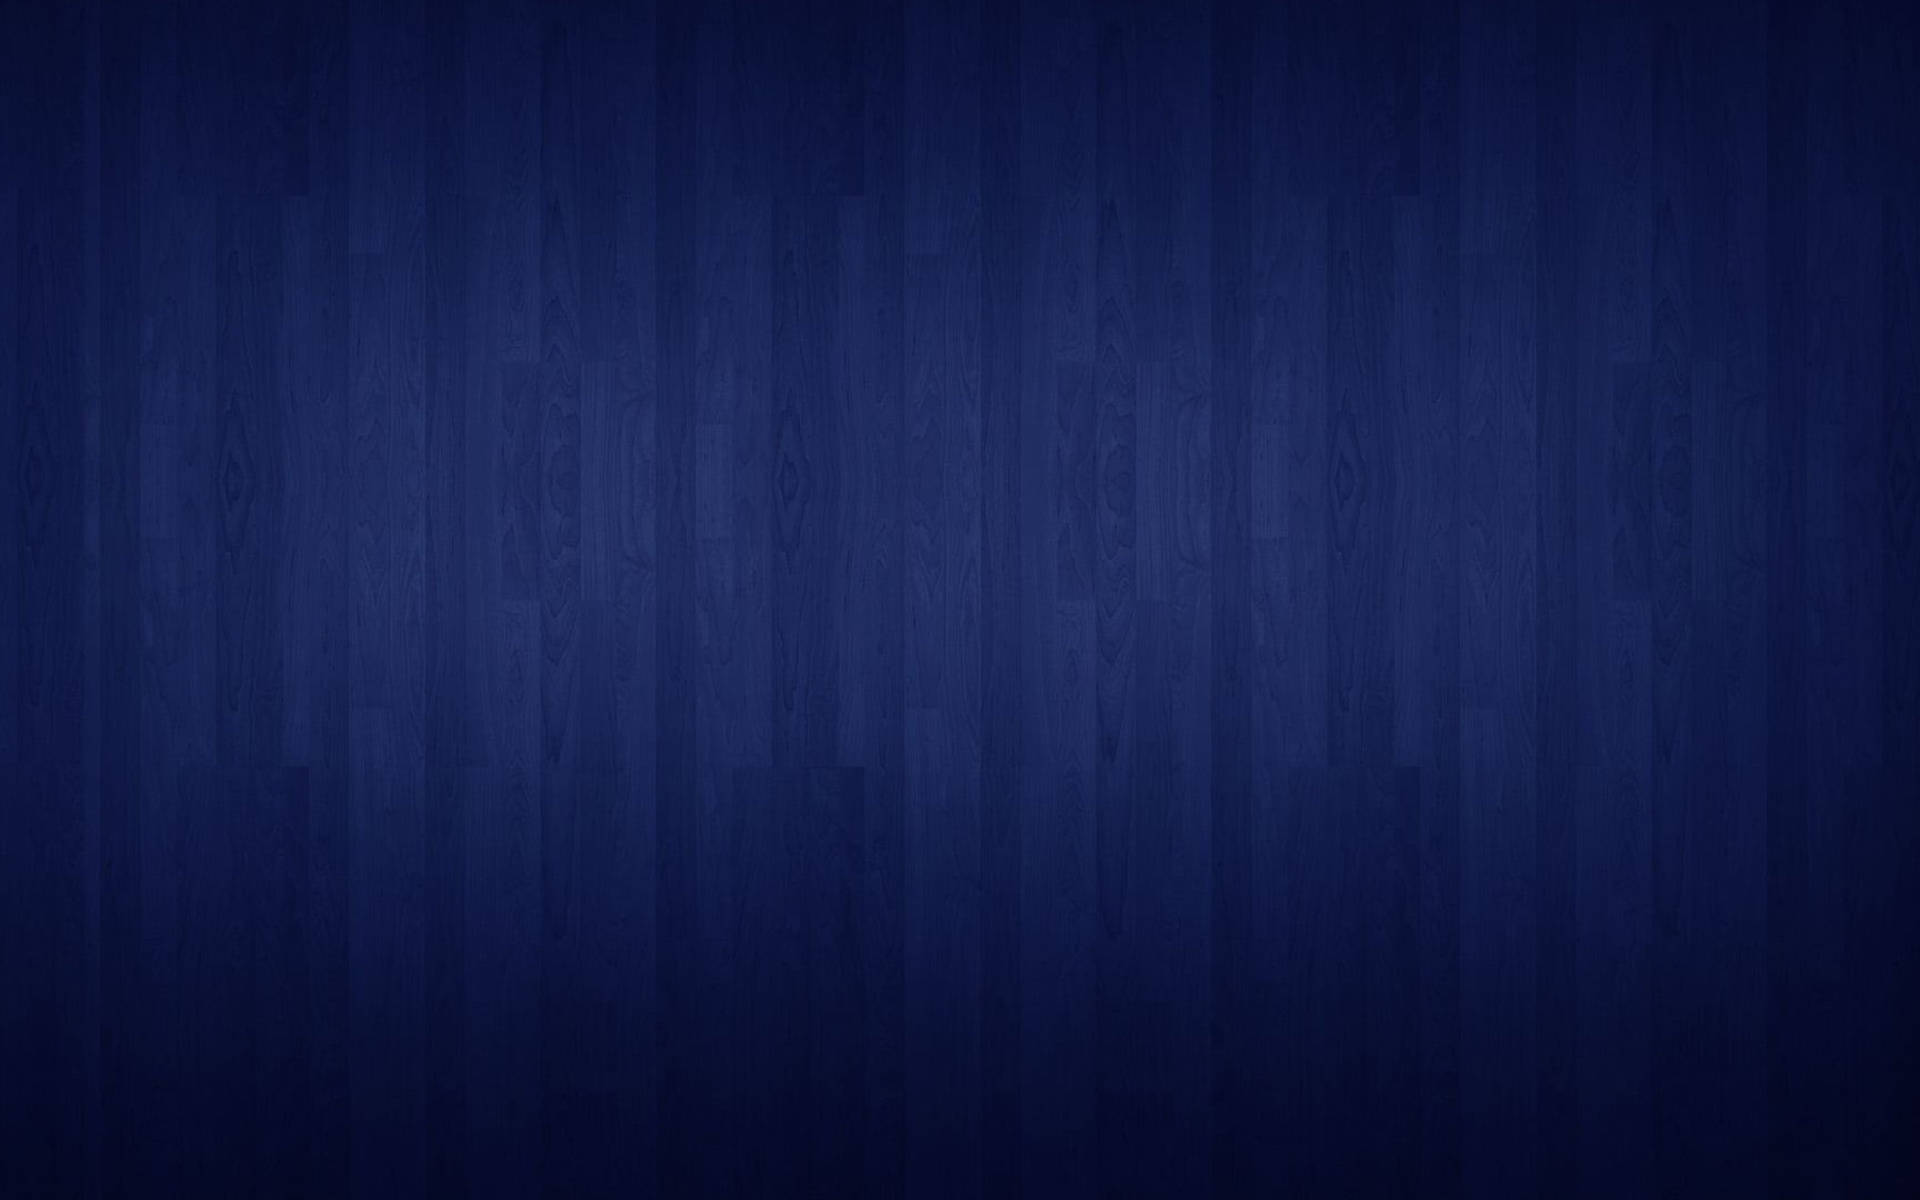 Plain Blue Wood Panels Background